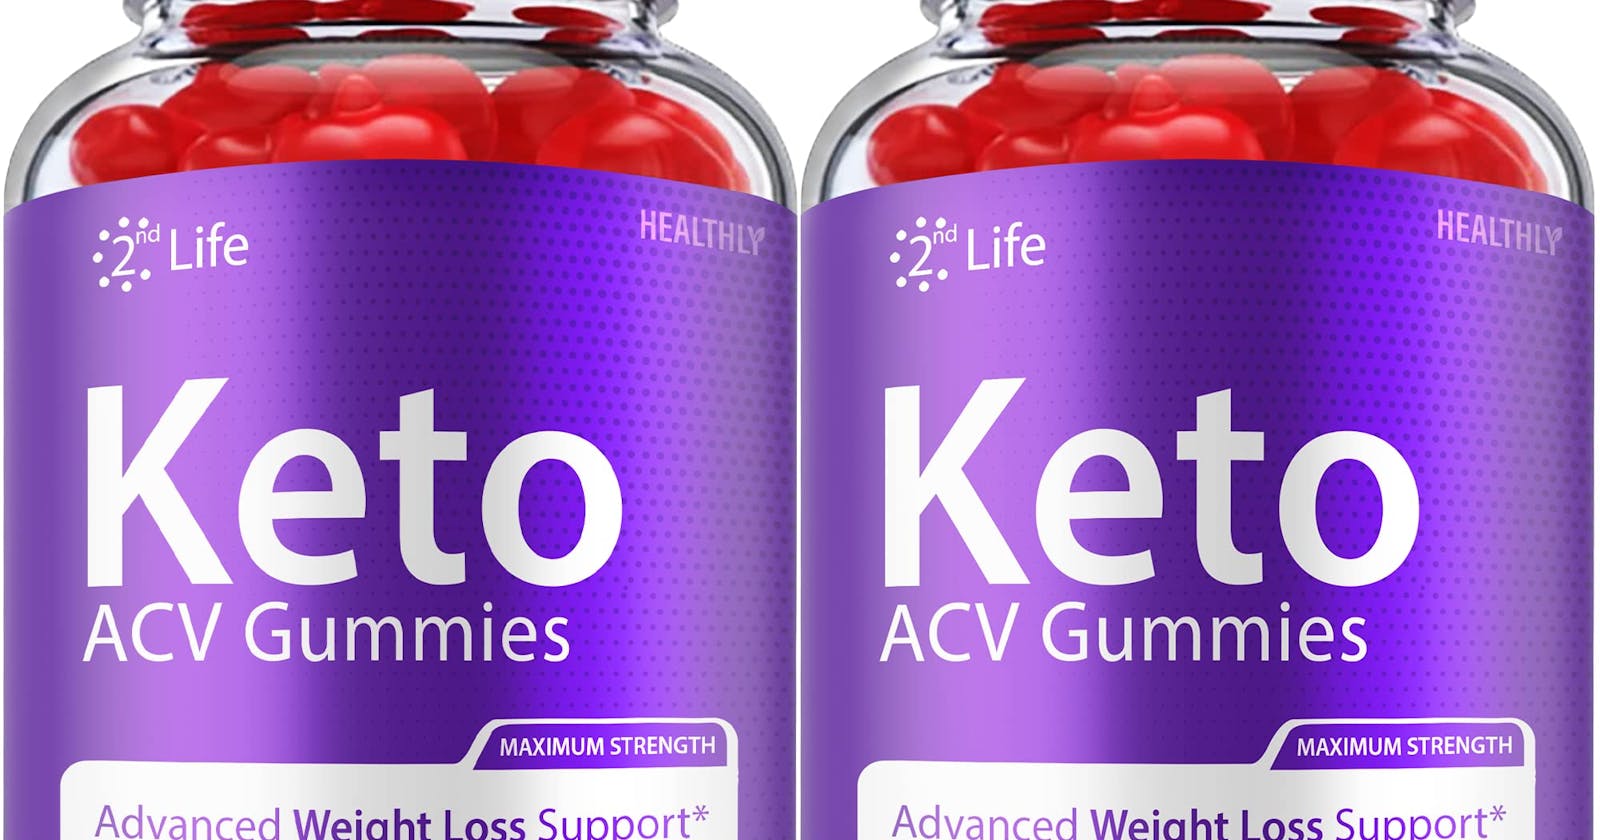 2nd Life Keto Plus ACV Gummies Reviews [Legit Or Scam]